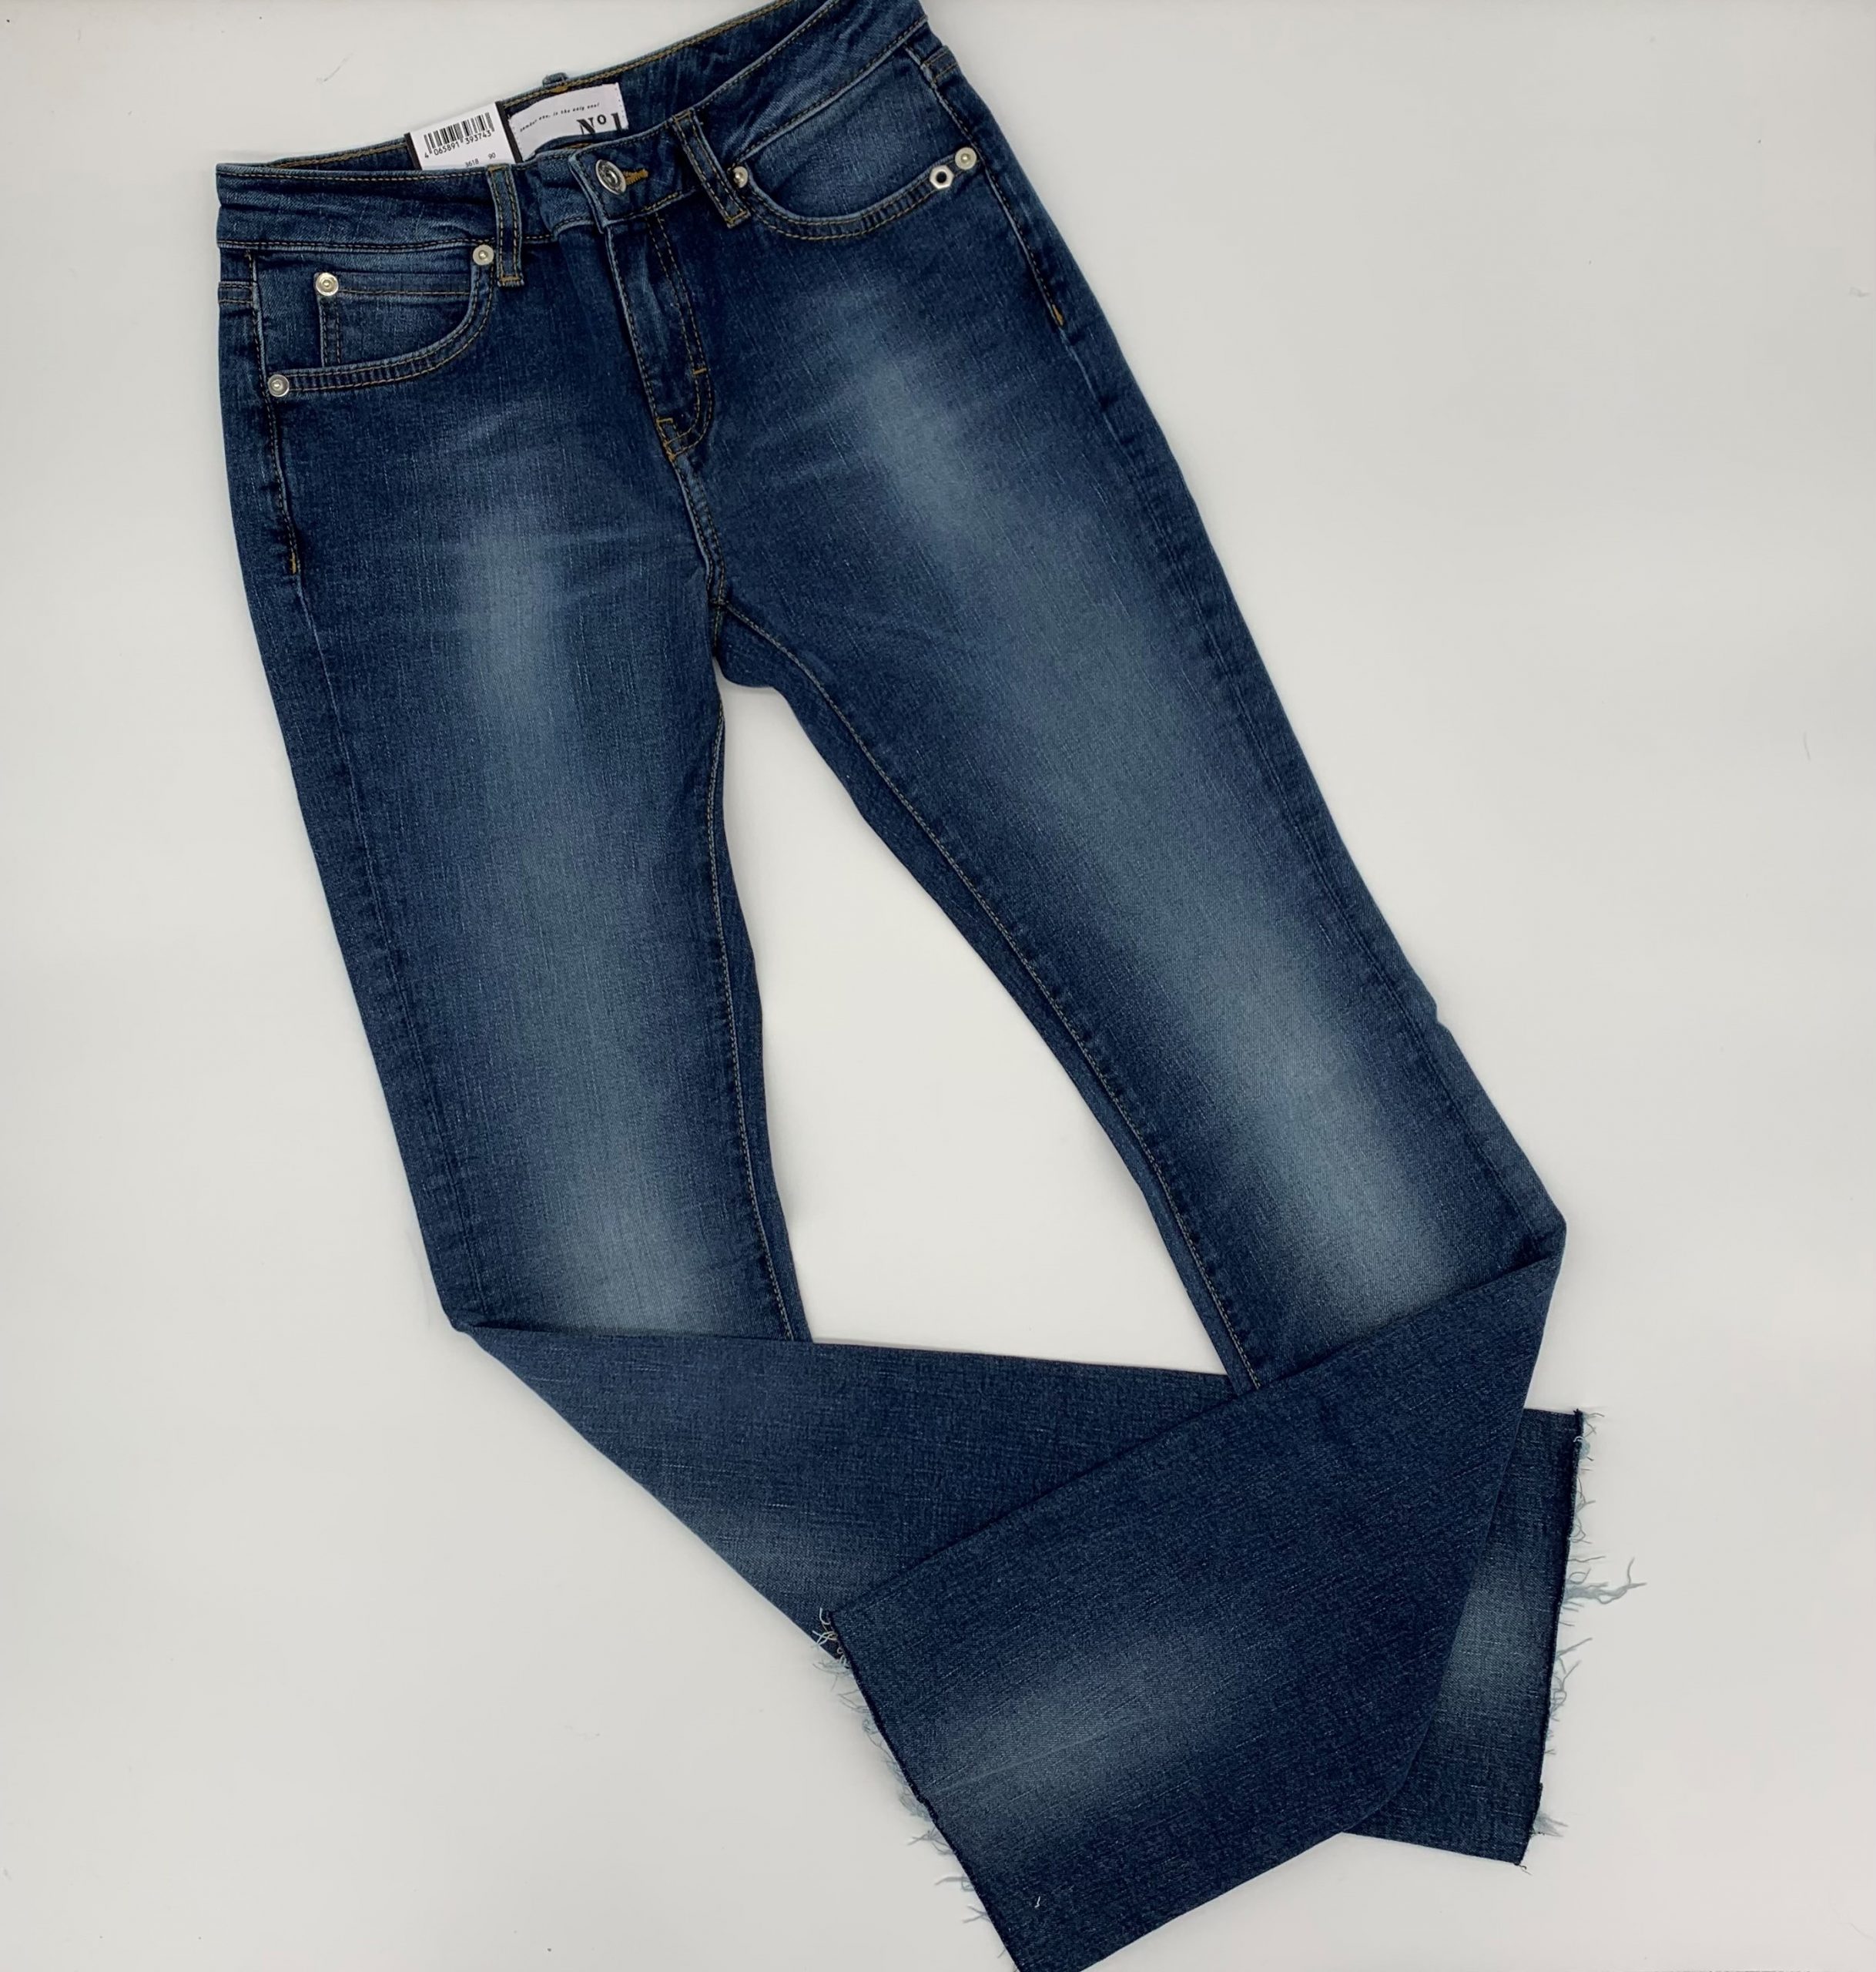 4 Jeans Lifestyle – – Kirsch Seite